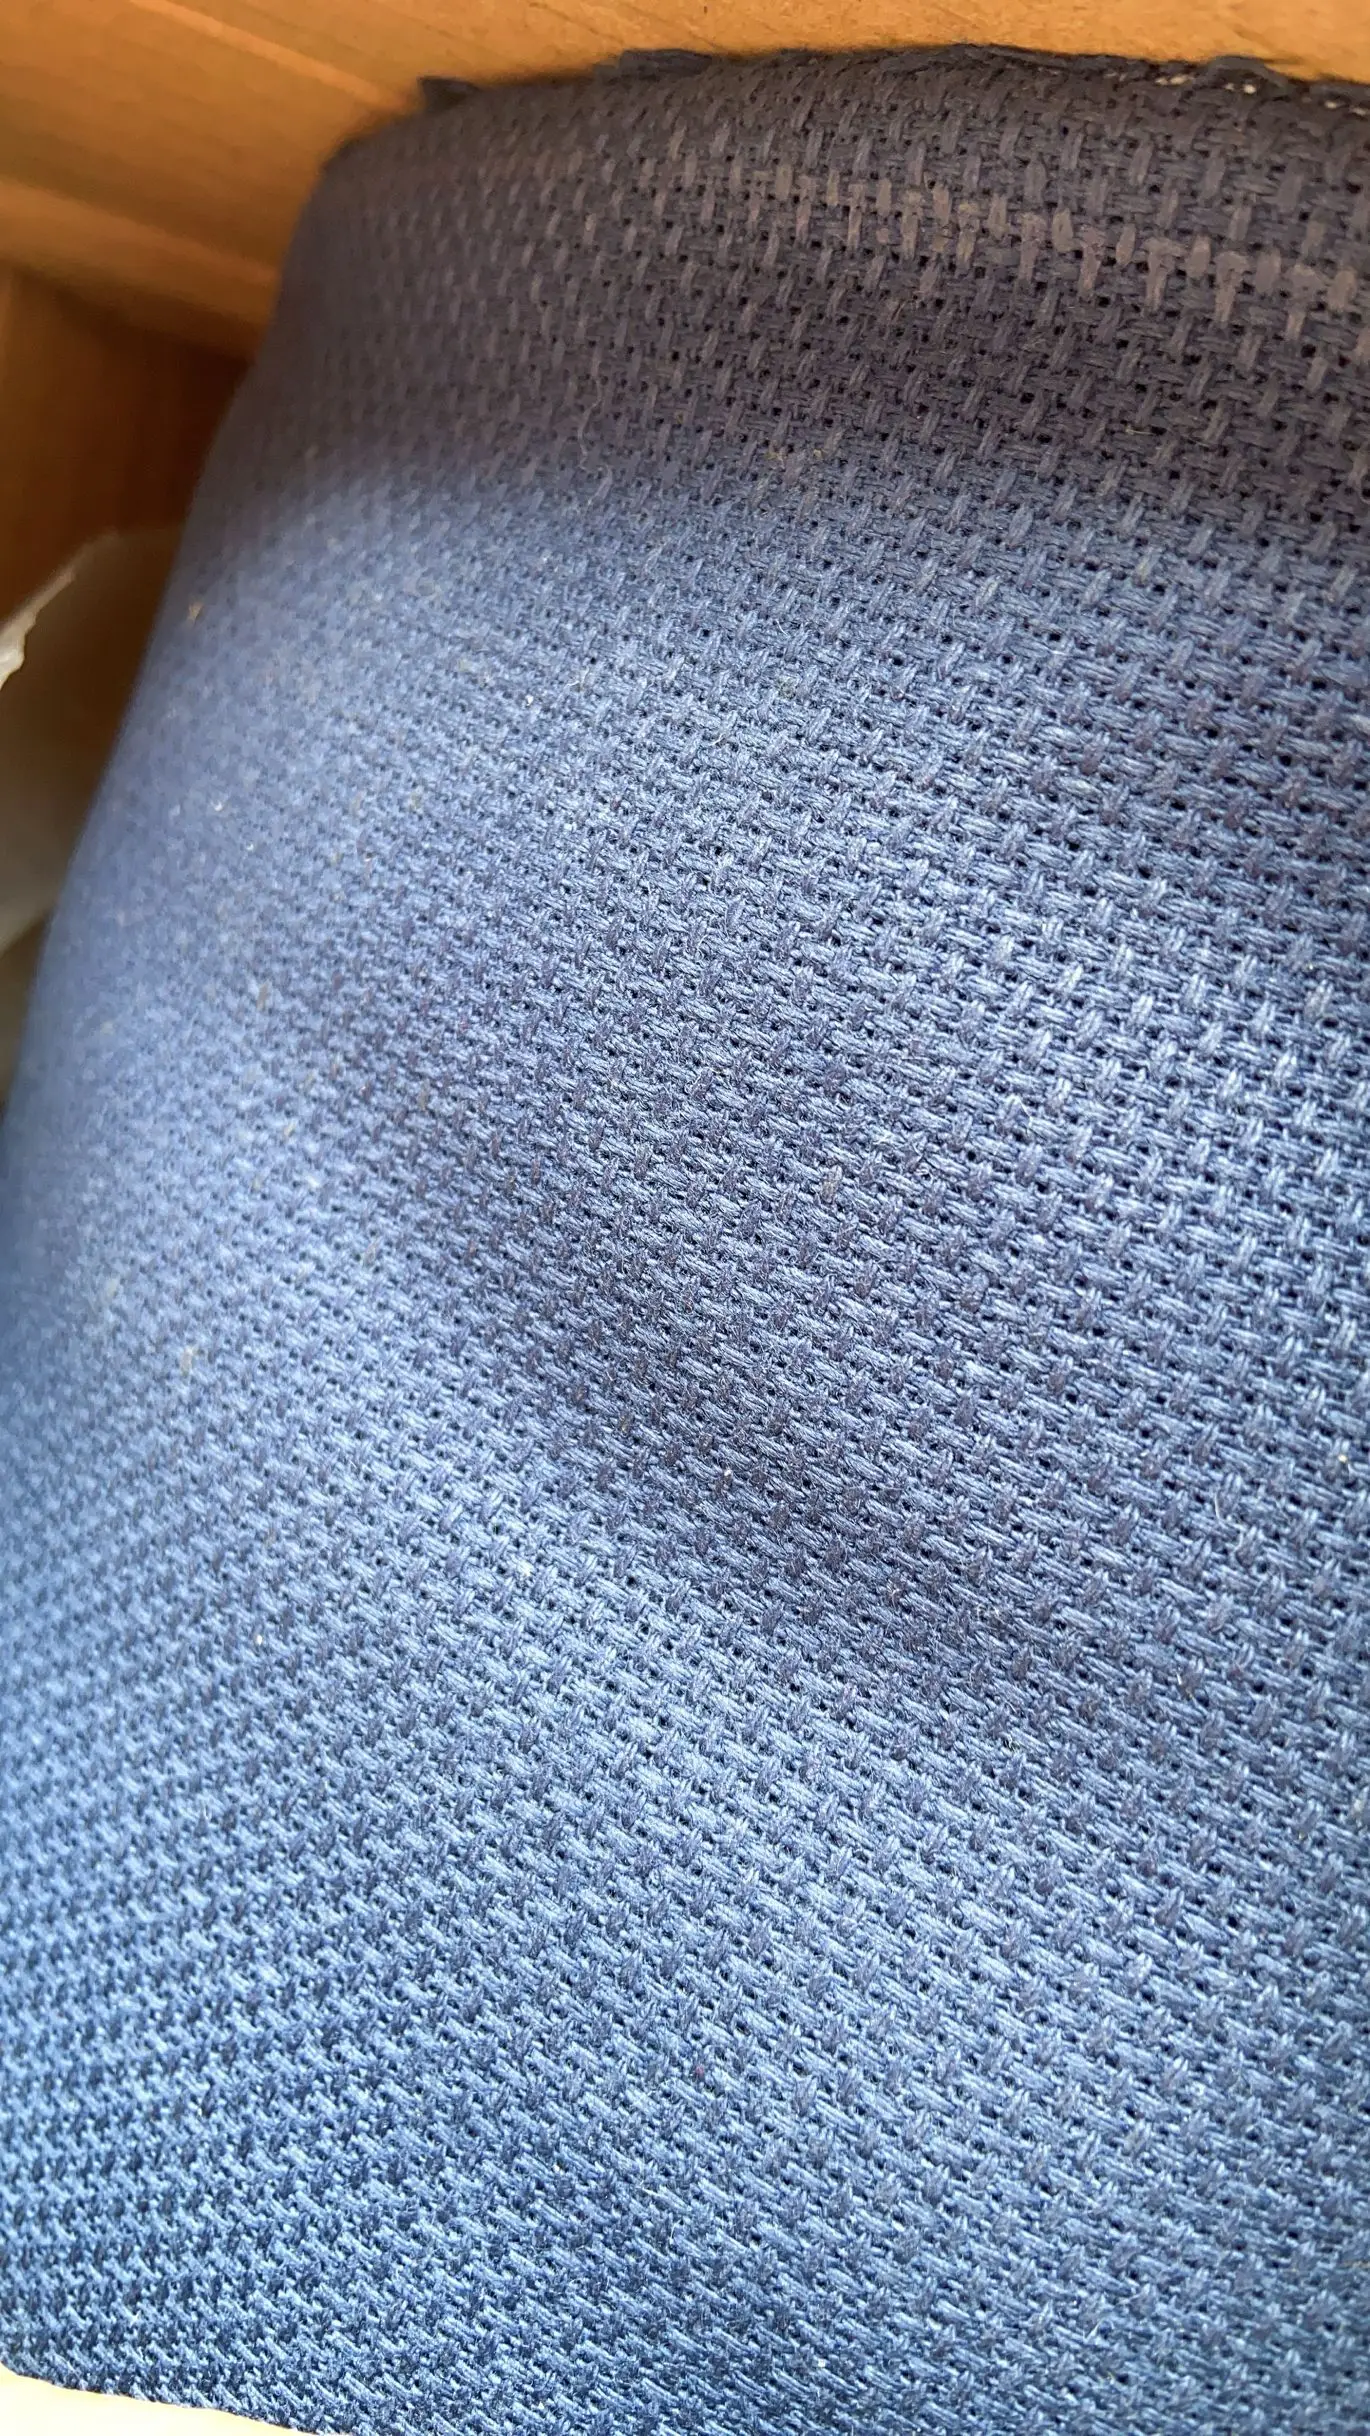 3ª oneroom 14 de Contagem (14 CT) 50X50cm Aida Pano de Ponto de Cruz, Tecido azul marinho aida Melhor Qualidade Frete Grátis